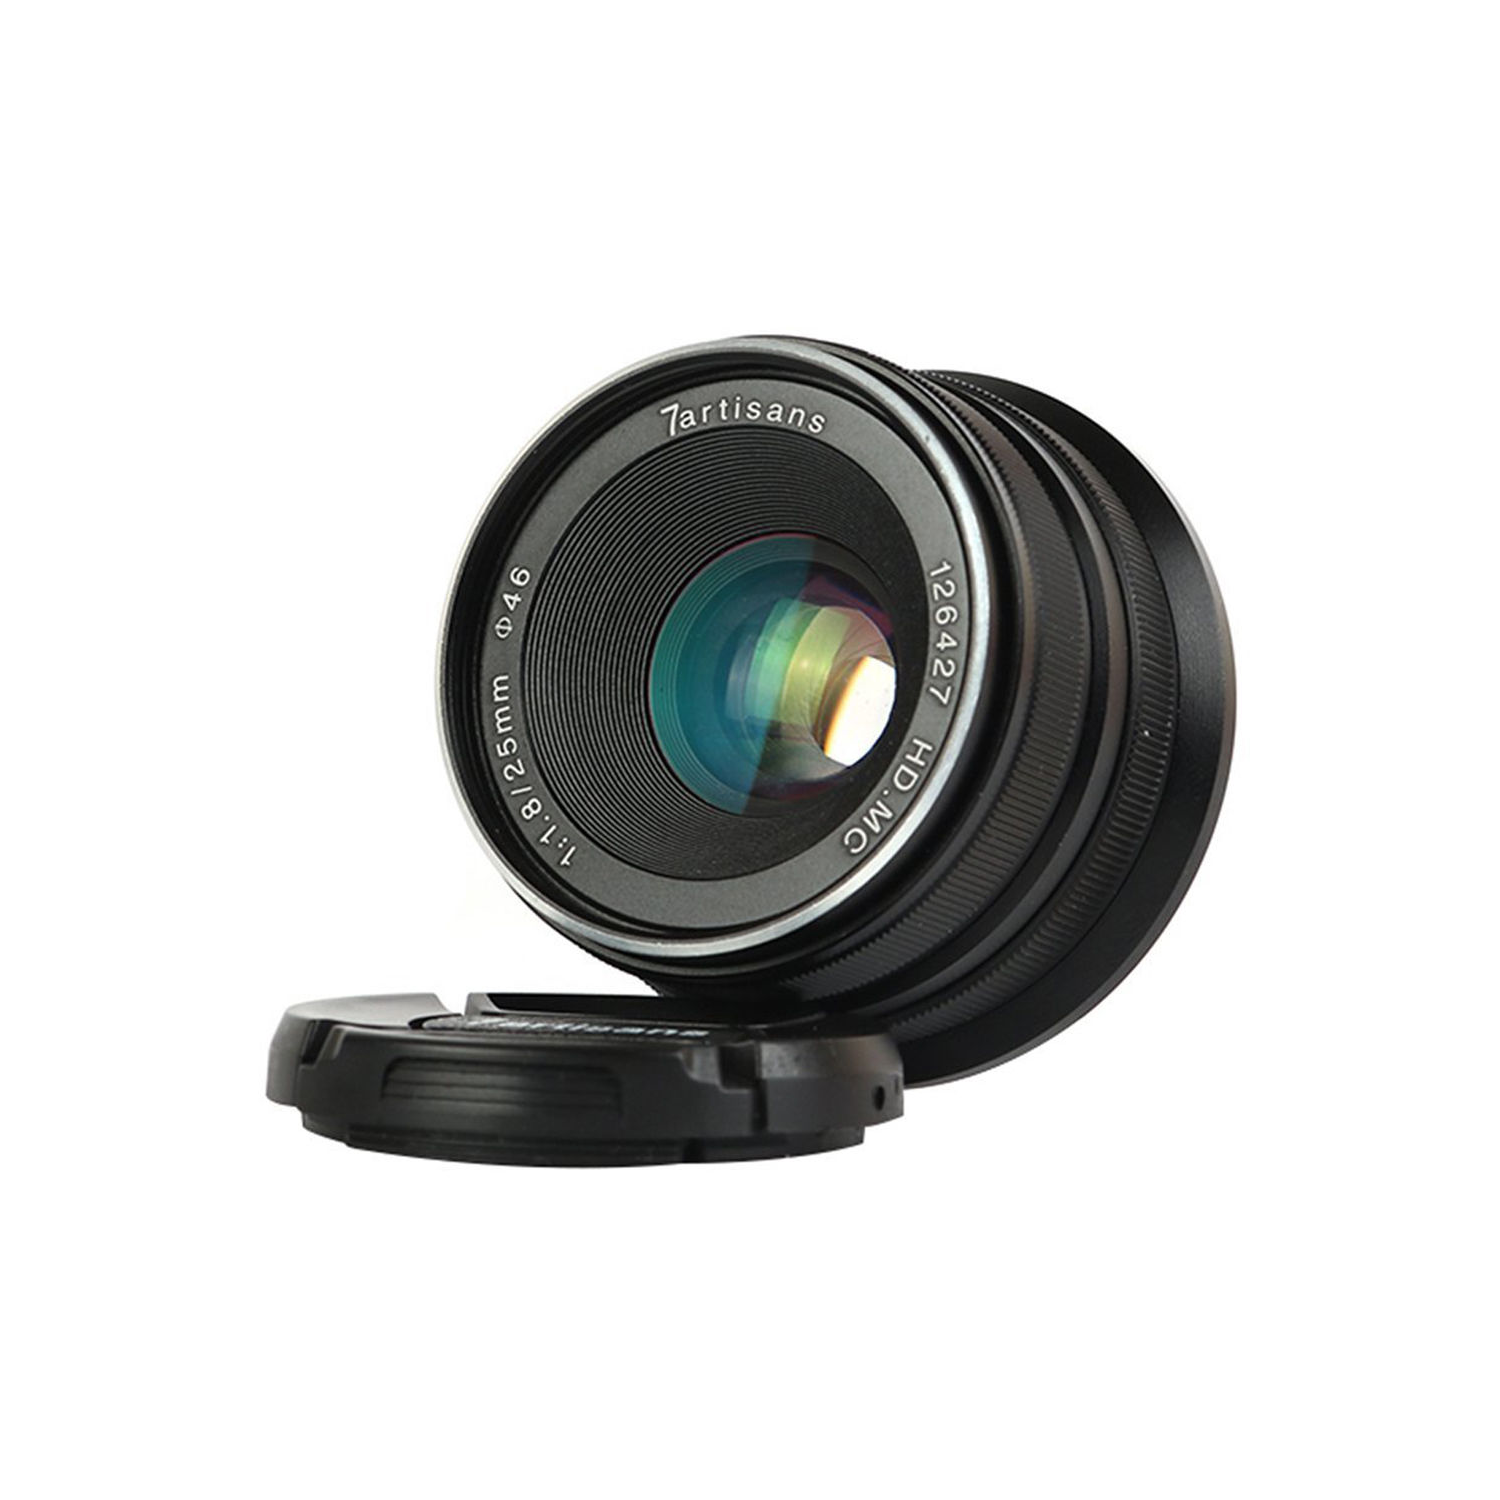 7artisans photoélectrique 25 mm f / 1,8 objectif pour le support Sony E